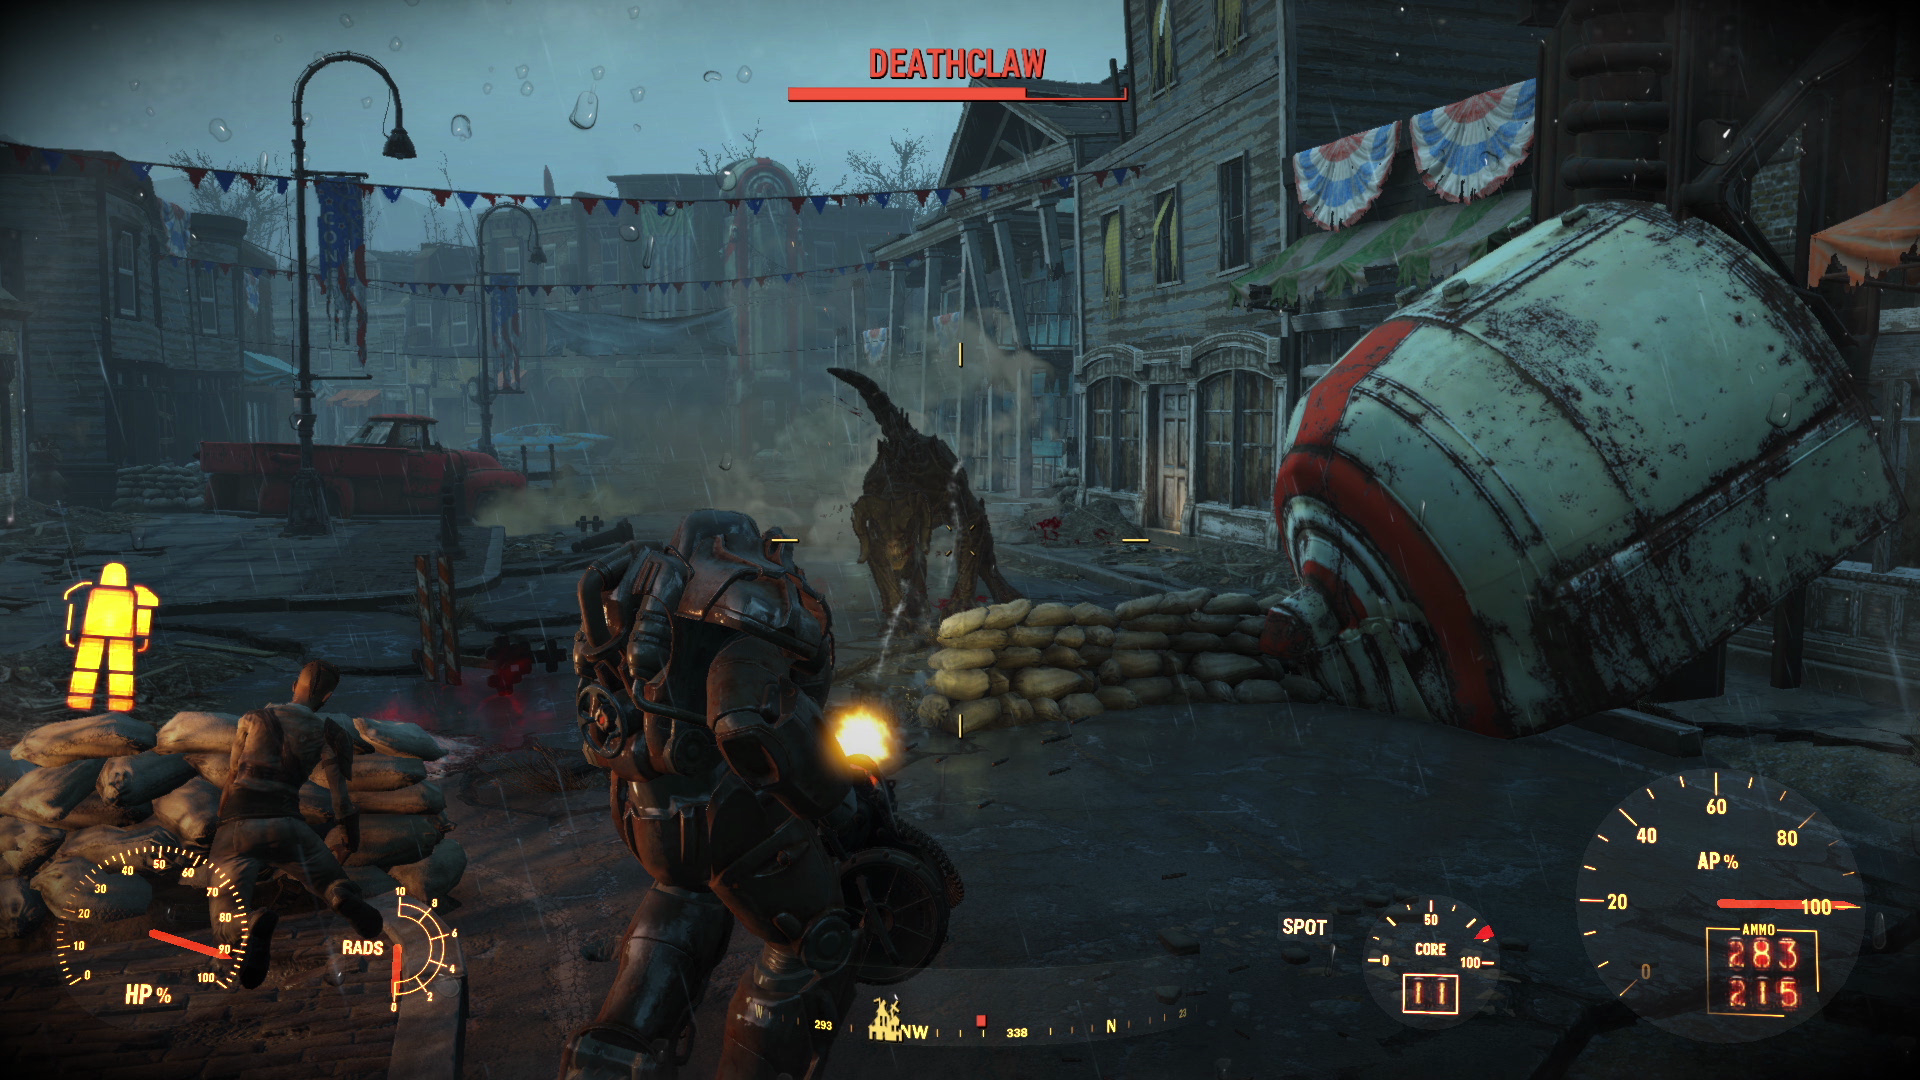 Fallout 4 fallout bethesda рецензия обзор отзывы мнение отвратительные мужики фолаут фоллаут фолач фолаут 4